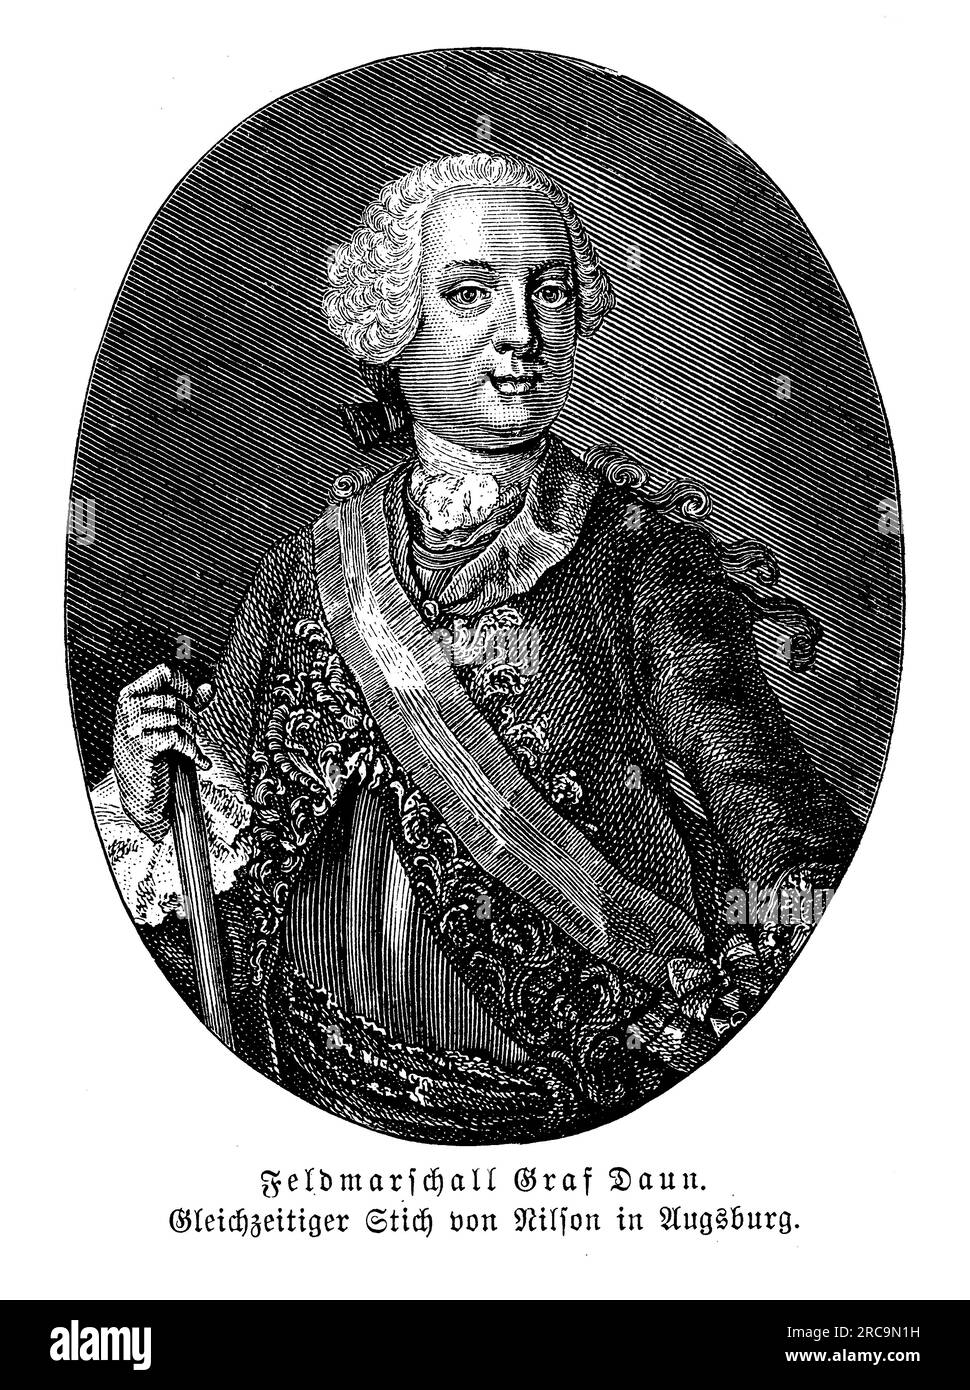 Porträt von Feldmarschall Leopold Josef Graf Daun, oft auch als Graf Daun bezeichnet, dem prominenten österreichischen Militärführer im 18. Jahrhundert. Er wurde am 24. Oktober 1705 geboren und diente in der Habsburger Armee unter Kaiserin Maria Theresa und später unter Kaiser Joseph II Graf Daun ist am besten bekannt für sein Kommando während des Siebenjährigen Krieges, wo er eine entscheidende Rolle in mehreren bedeutenden Schlachten spielte, darunter die Schlacht von Kolin im Jahr 1757 und die Schlacht von Maxen im Jahr 1759. Er wurde für seine strategischen Fähigkeiten und seine Verteidigungstaktik hoch geschätzt. Graf Dauns vorsichtiger Ansatz und Abwehrfähigkeit Stockfoto